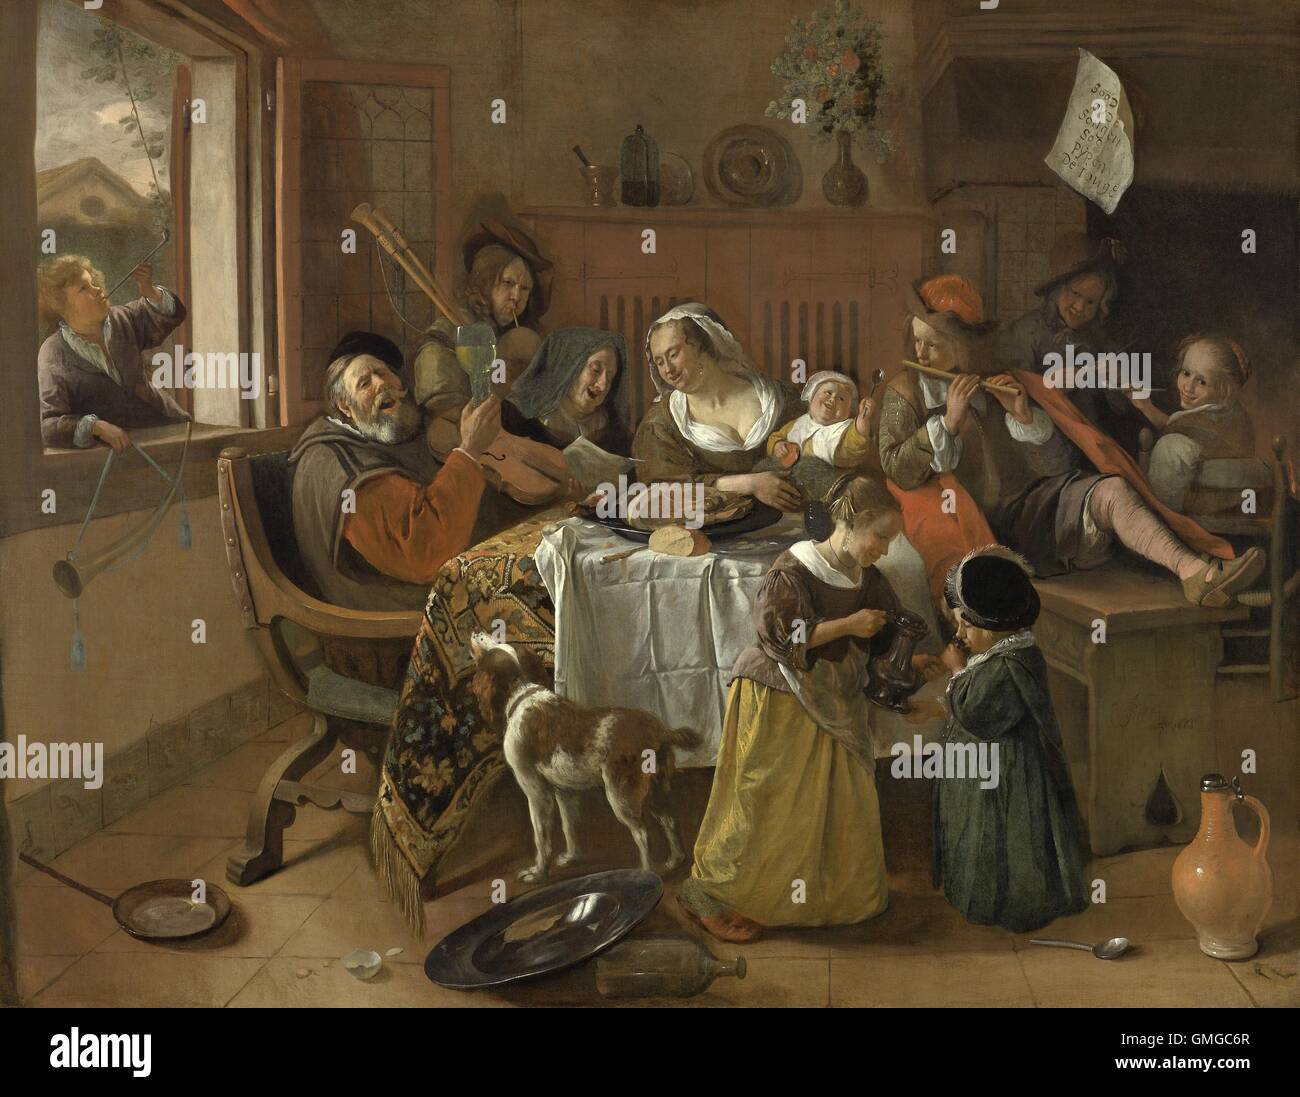 La famille joyeux, de Jan Steen, 1668, la peinture hollandaise, huile sur toile. Le père chante tout en élevant une vitre et la mère et la grand-mère inscrivez-vous en. Les enfants sont soit soufflant dans un instrument à vent ou de fumer un long tuyau ou de boire. Une note moralisatrice se bloque sur le manteau, "comme l'ancien chanter, de même le jeune twitter' (BSLOC 2016 3 165) Banque D'Images